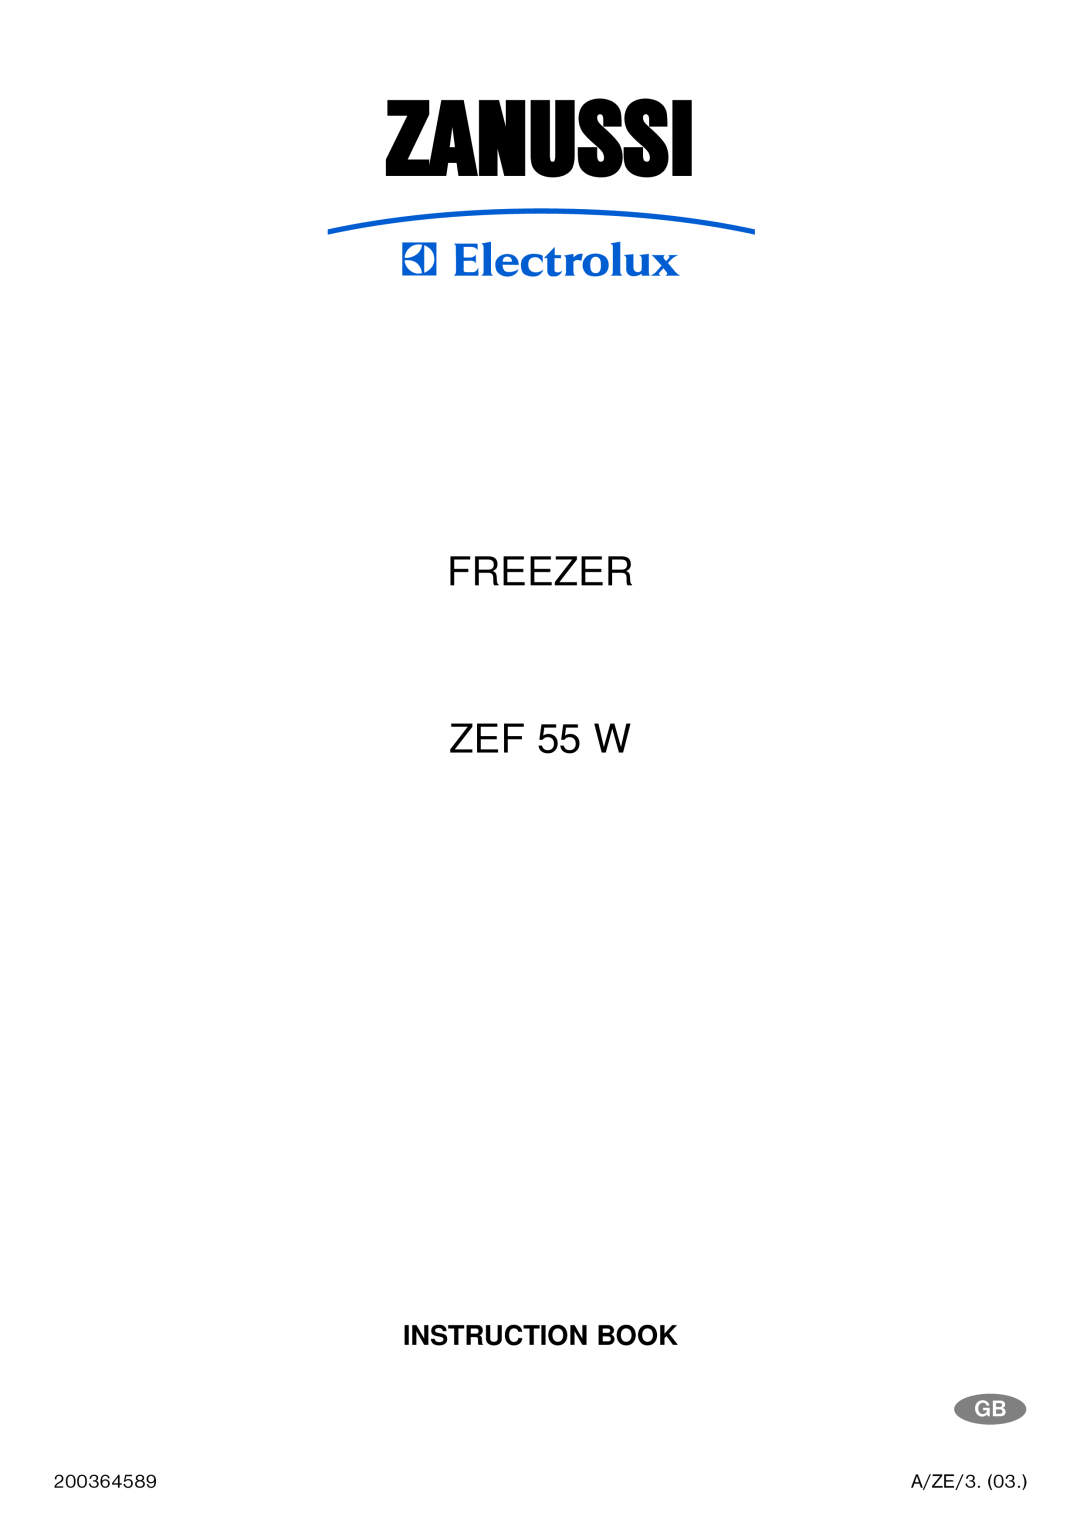 Zanussi manual Zanussi, FREEZER ZEF 55 W, Instruction Book 